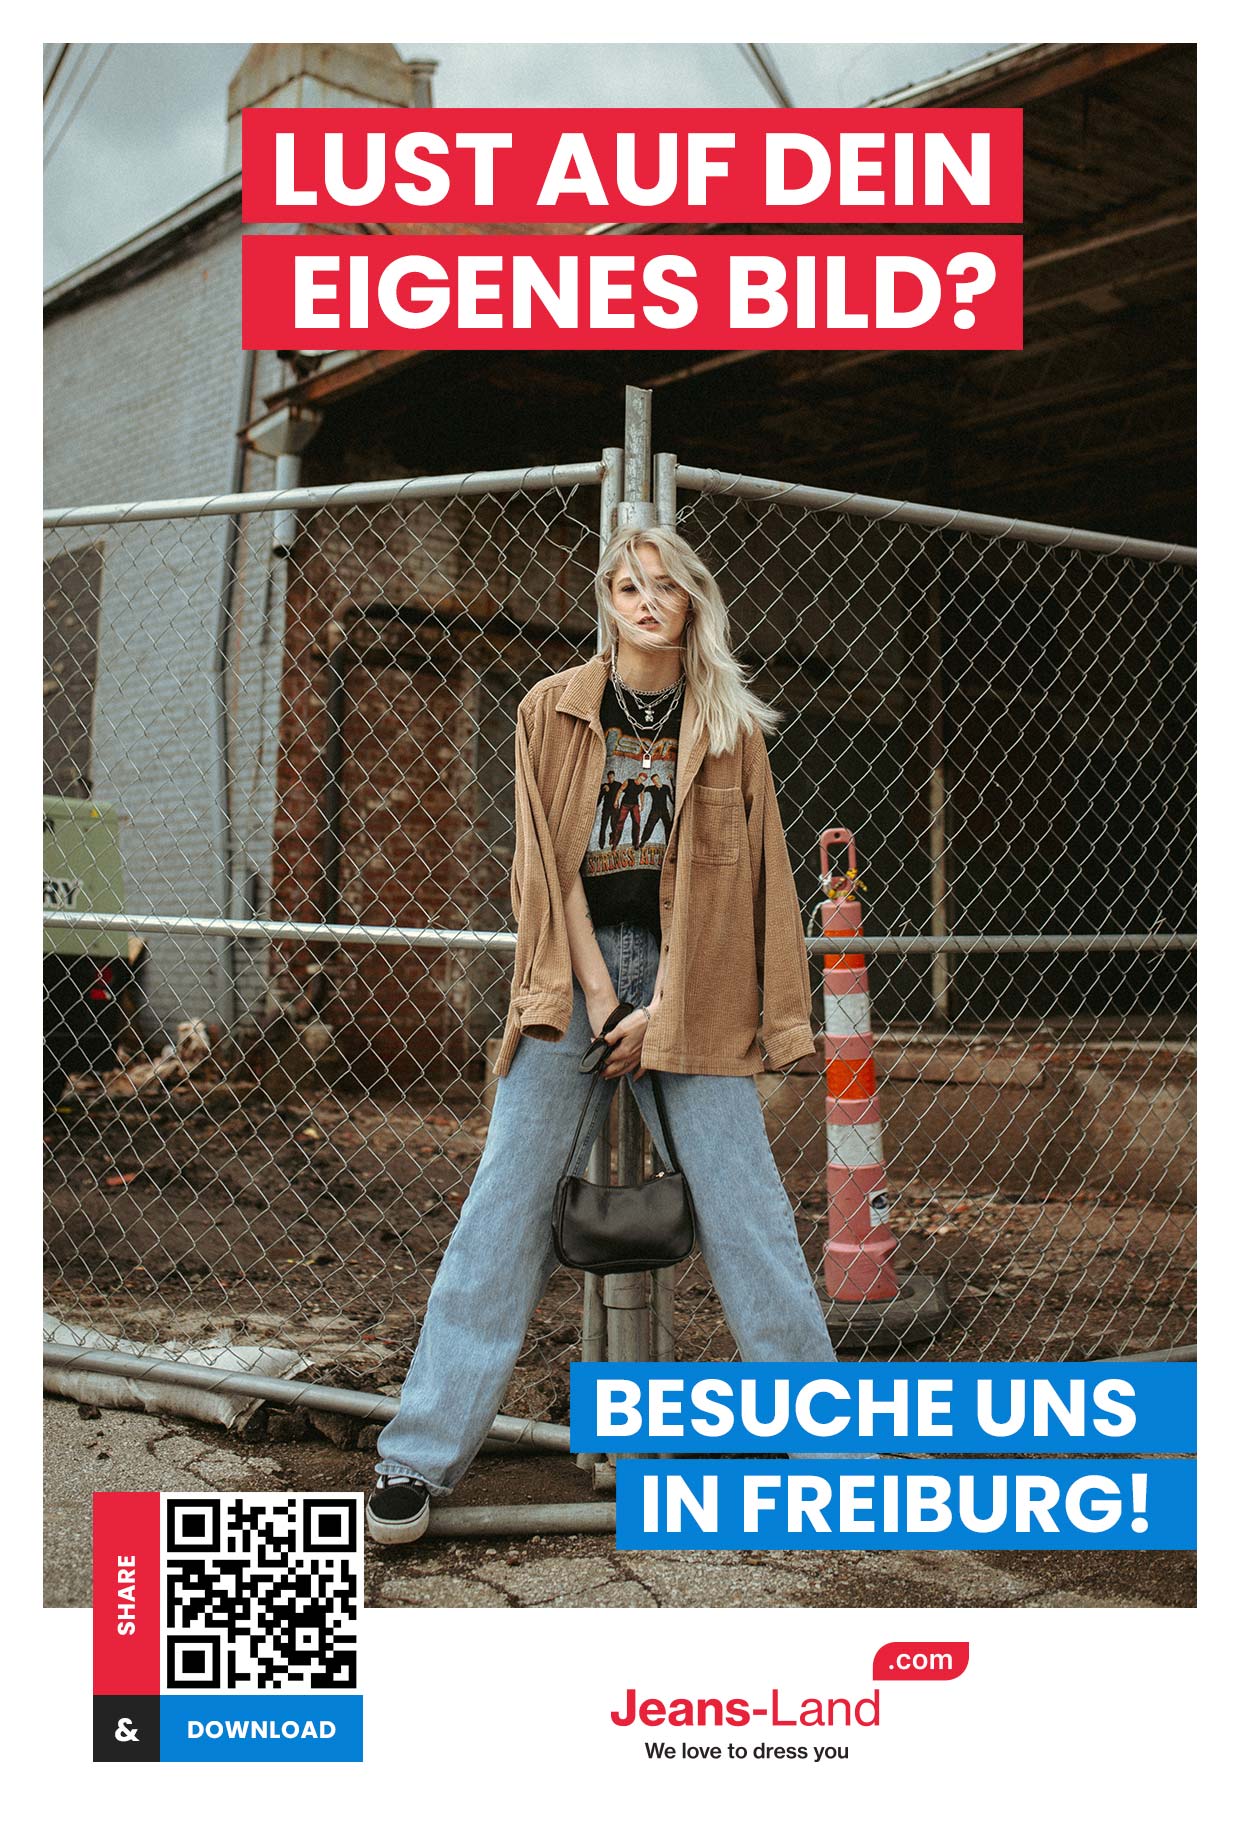 Werde berühmt und teile DEINEN Look durch Jeans-Land.com in Freiburg